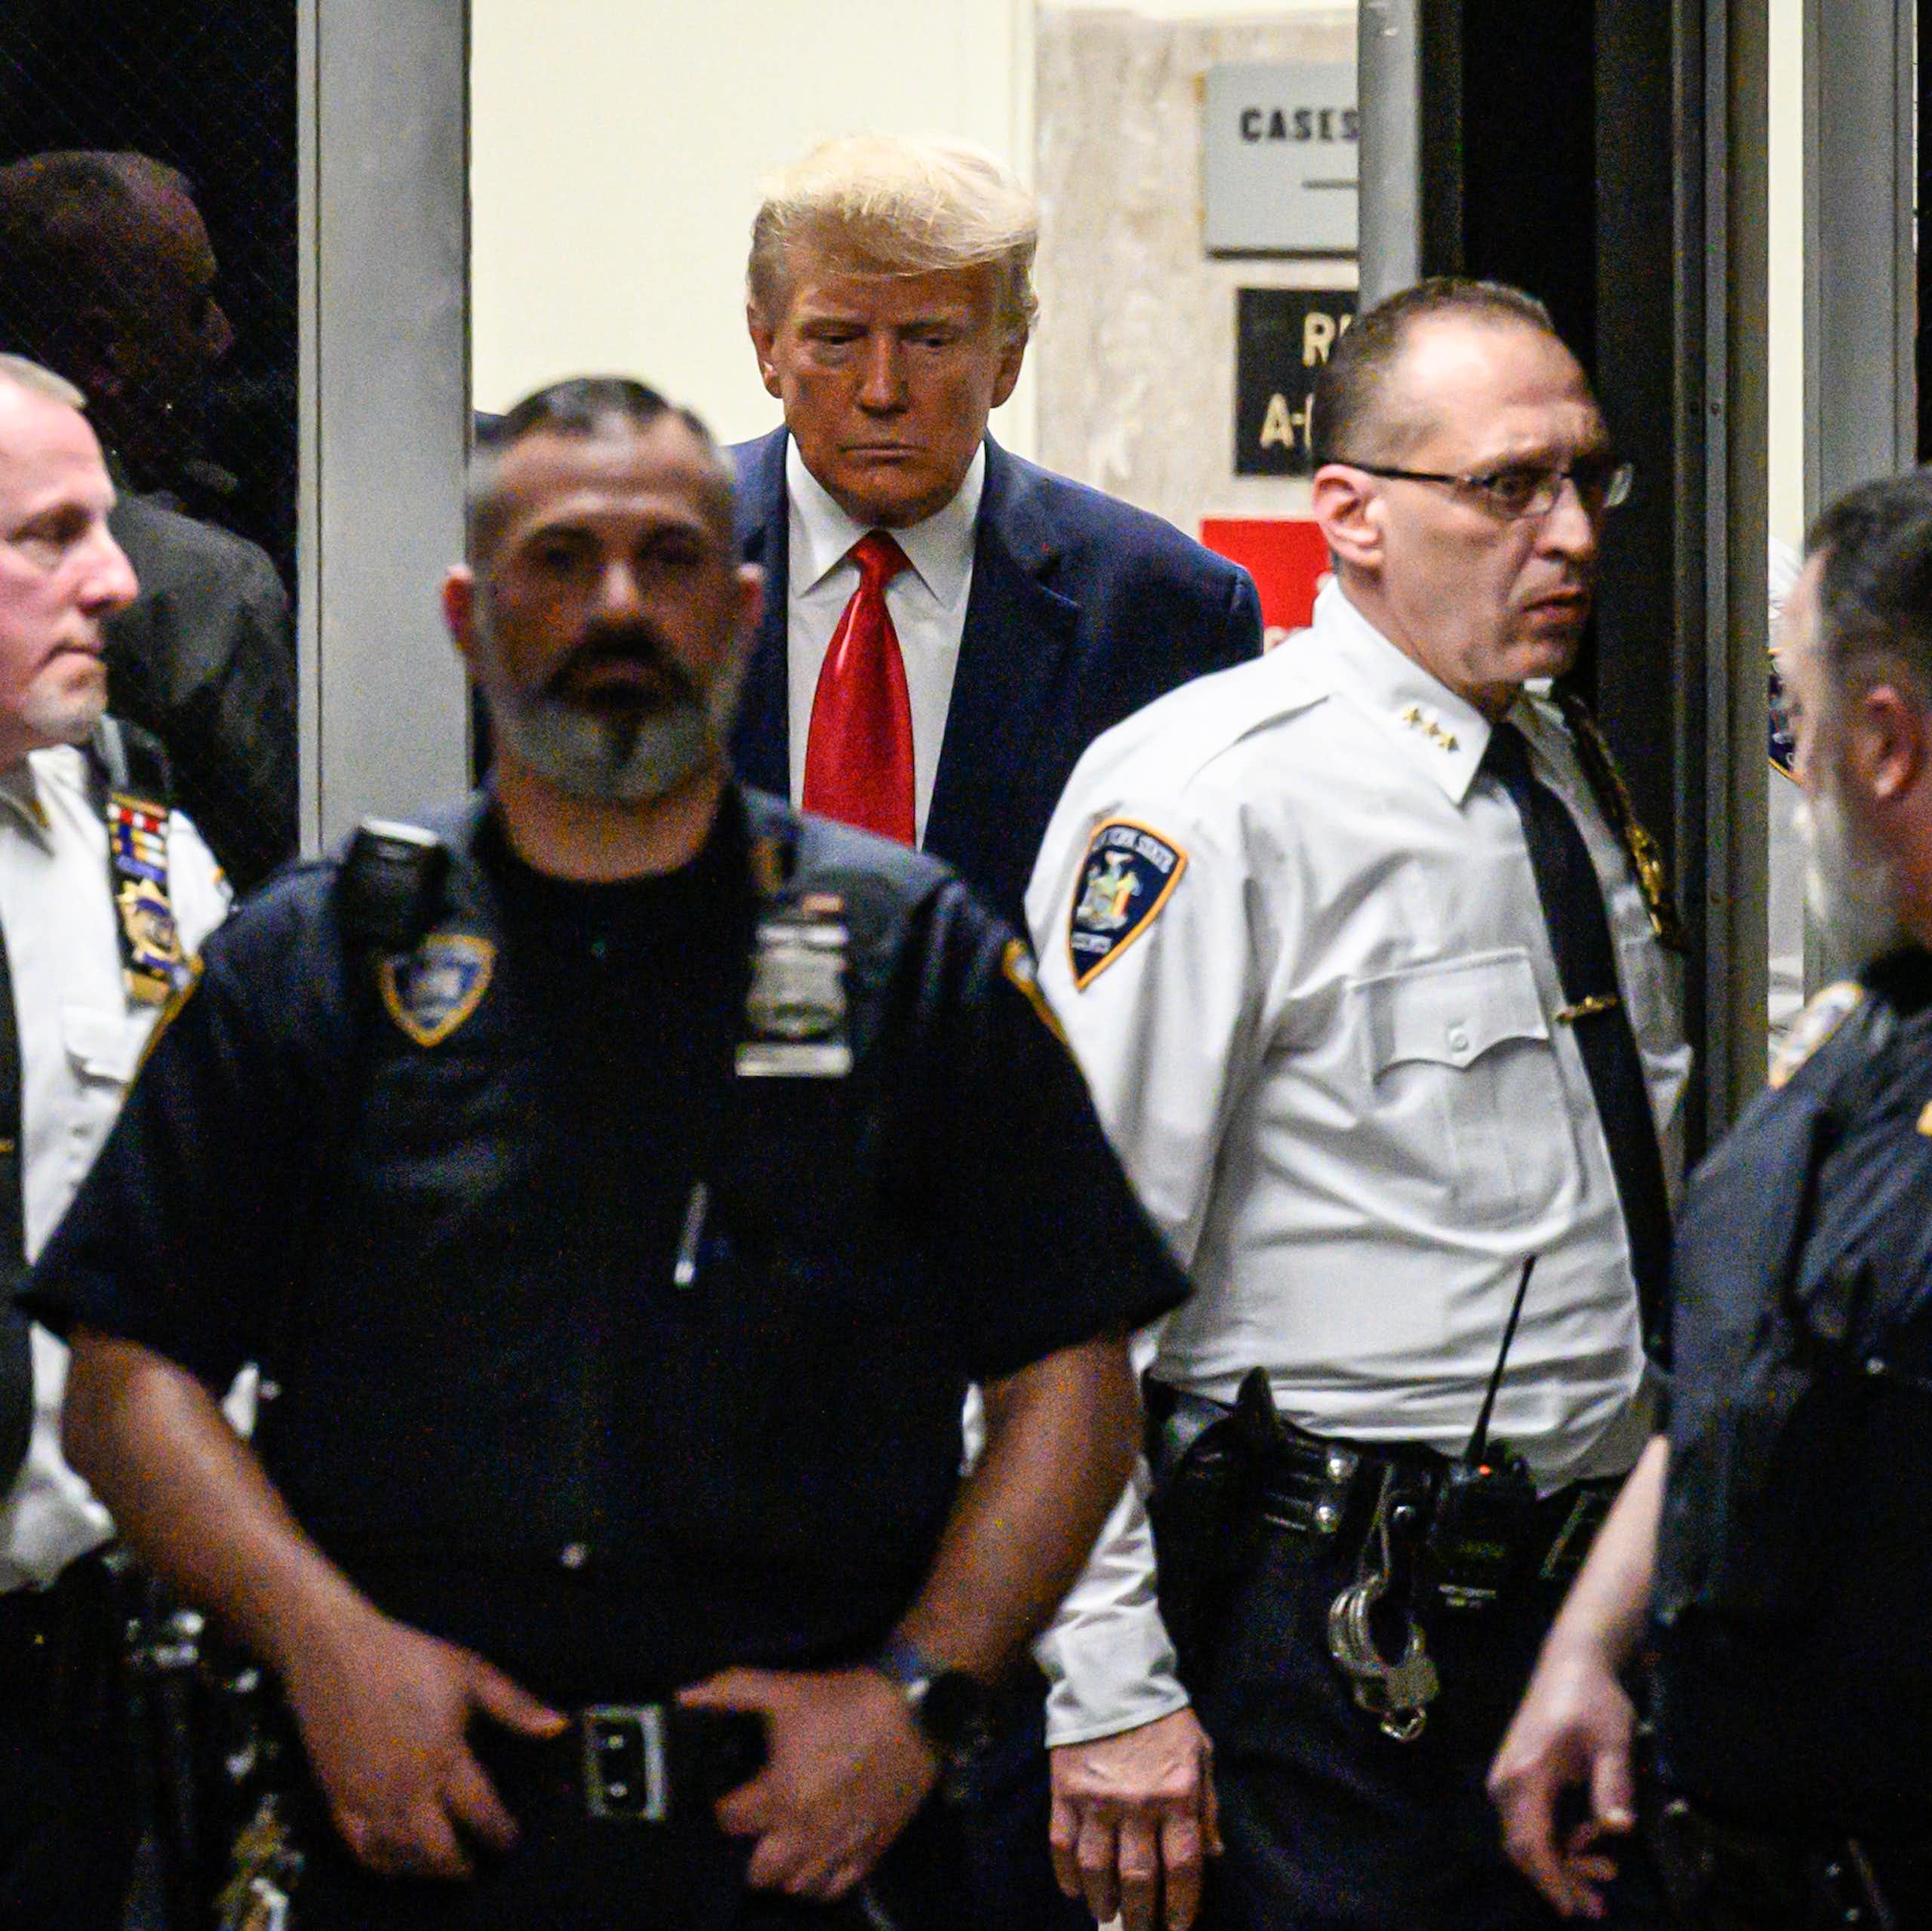 Donald Trump entouré de plusieurs policiers en tenue